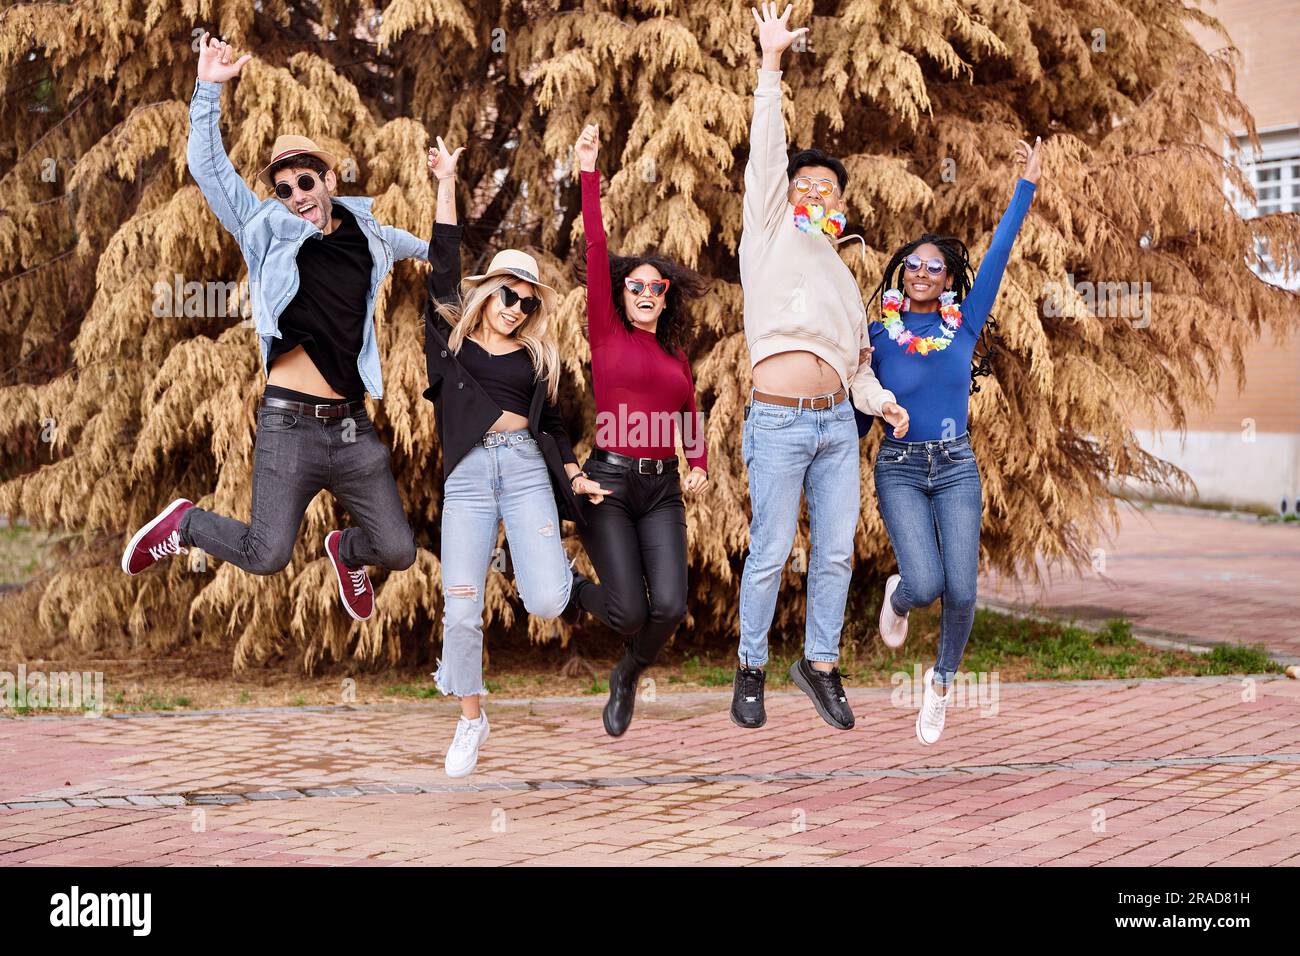 Amici felici ed emozionati che saltano mentre fanno festa all'aperto. Festa, carnevale e amicizia. Foto Stock